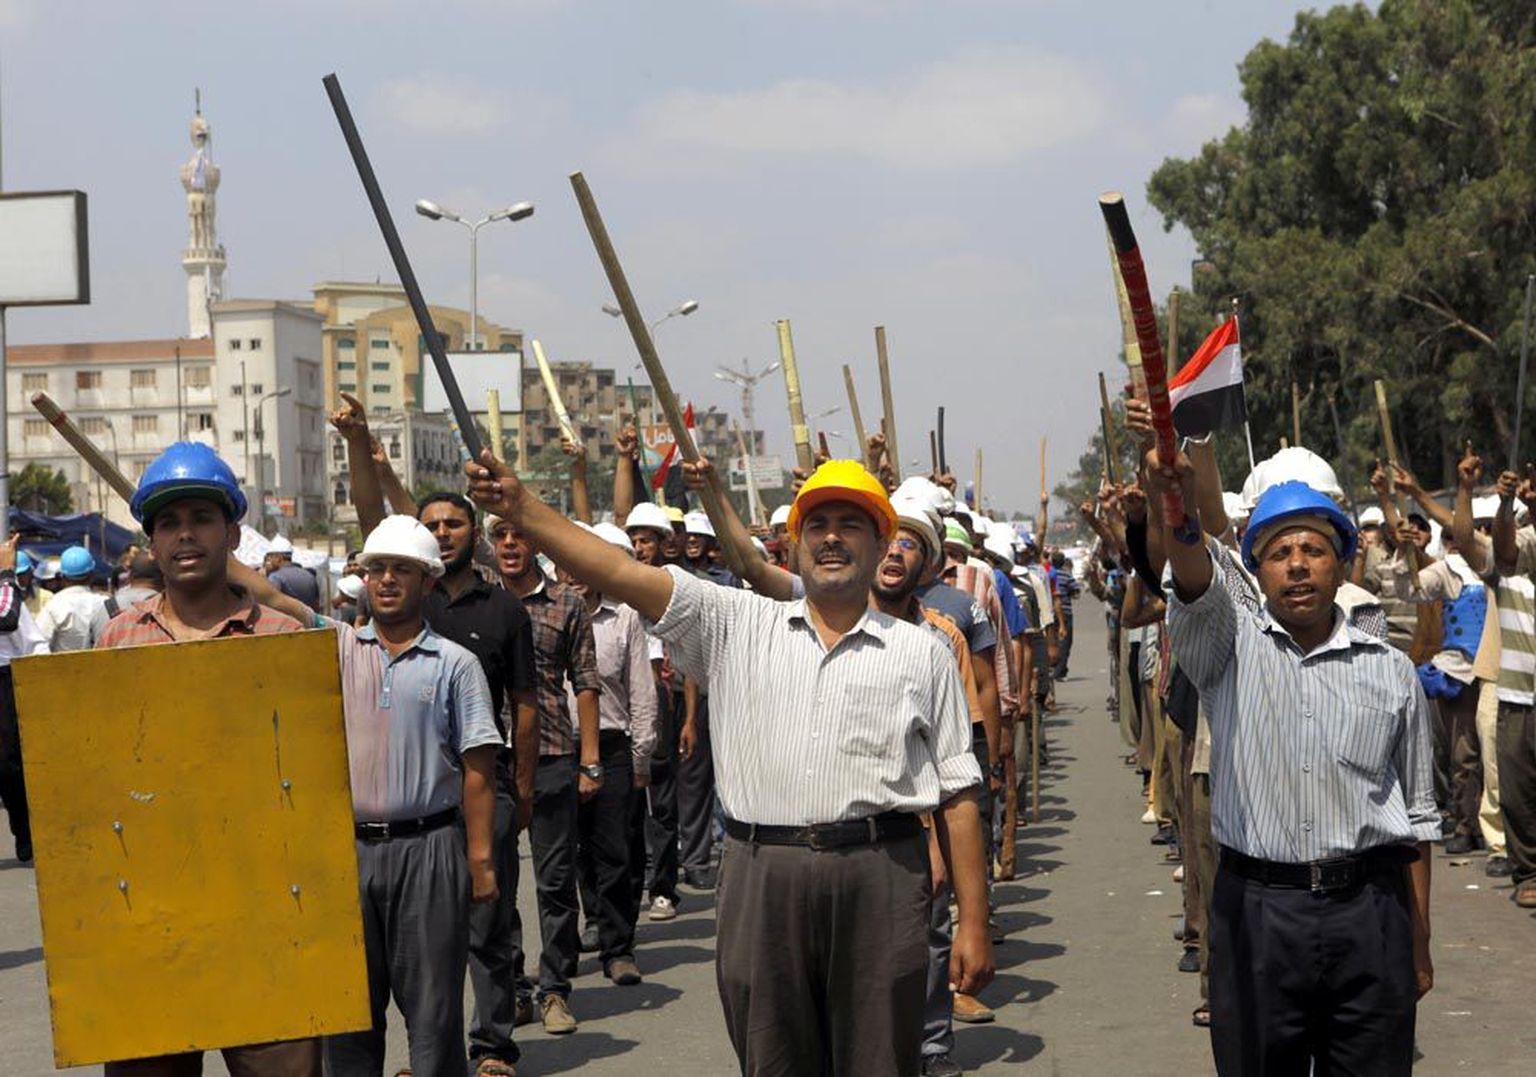 President Mohamed Morsi miljonite vastaste kõrval on tänavatele tulnud ka riigipea toetajad. Pildil avaldavad kaigaste ja kiivritega varustatud Morsi poolehoidjad presidendile toetust Kairos asuva Rabia al-Adawiya mošee juures.